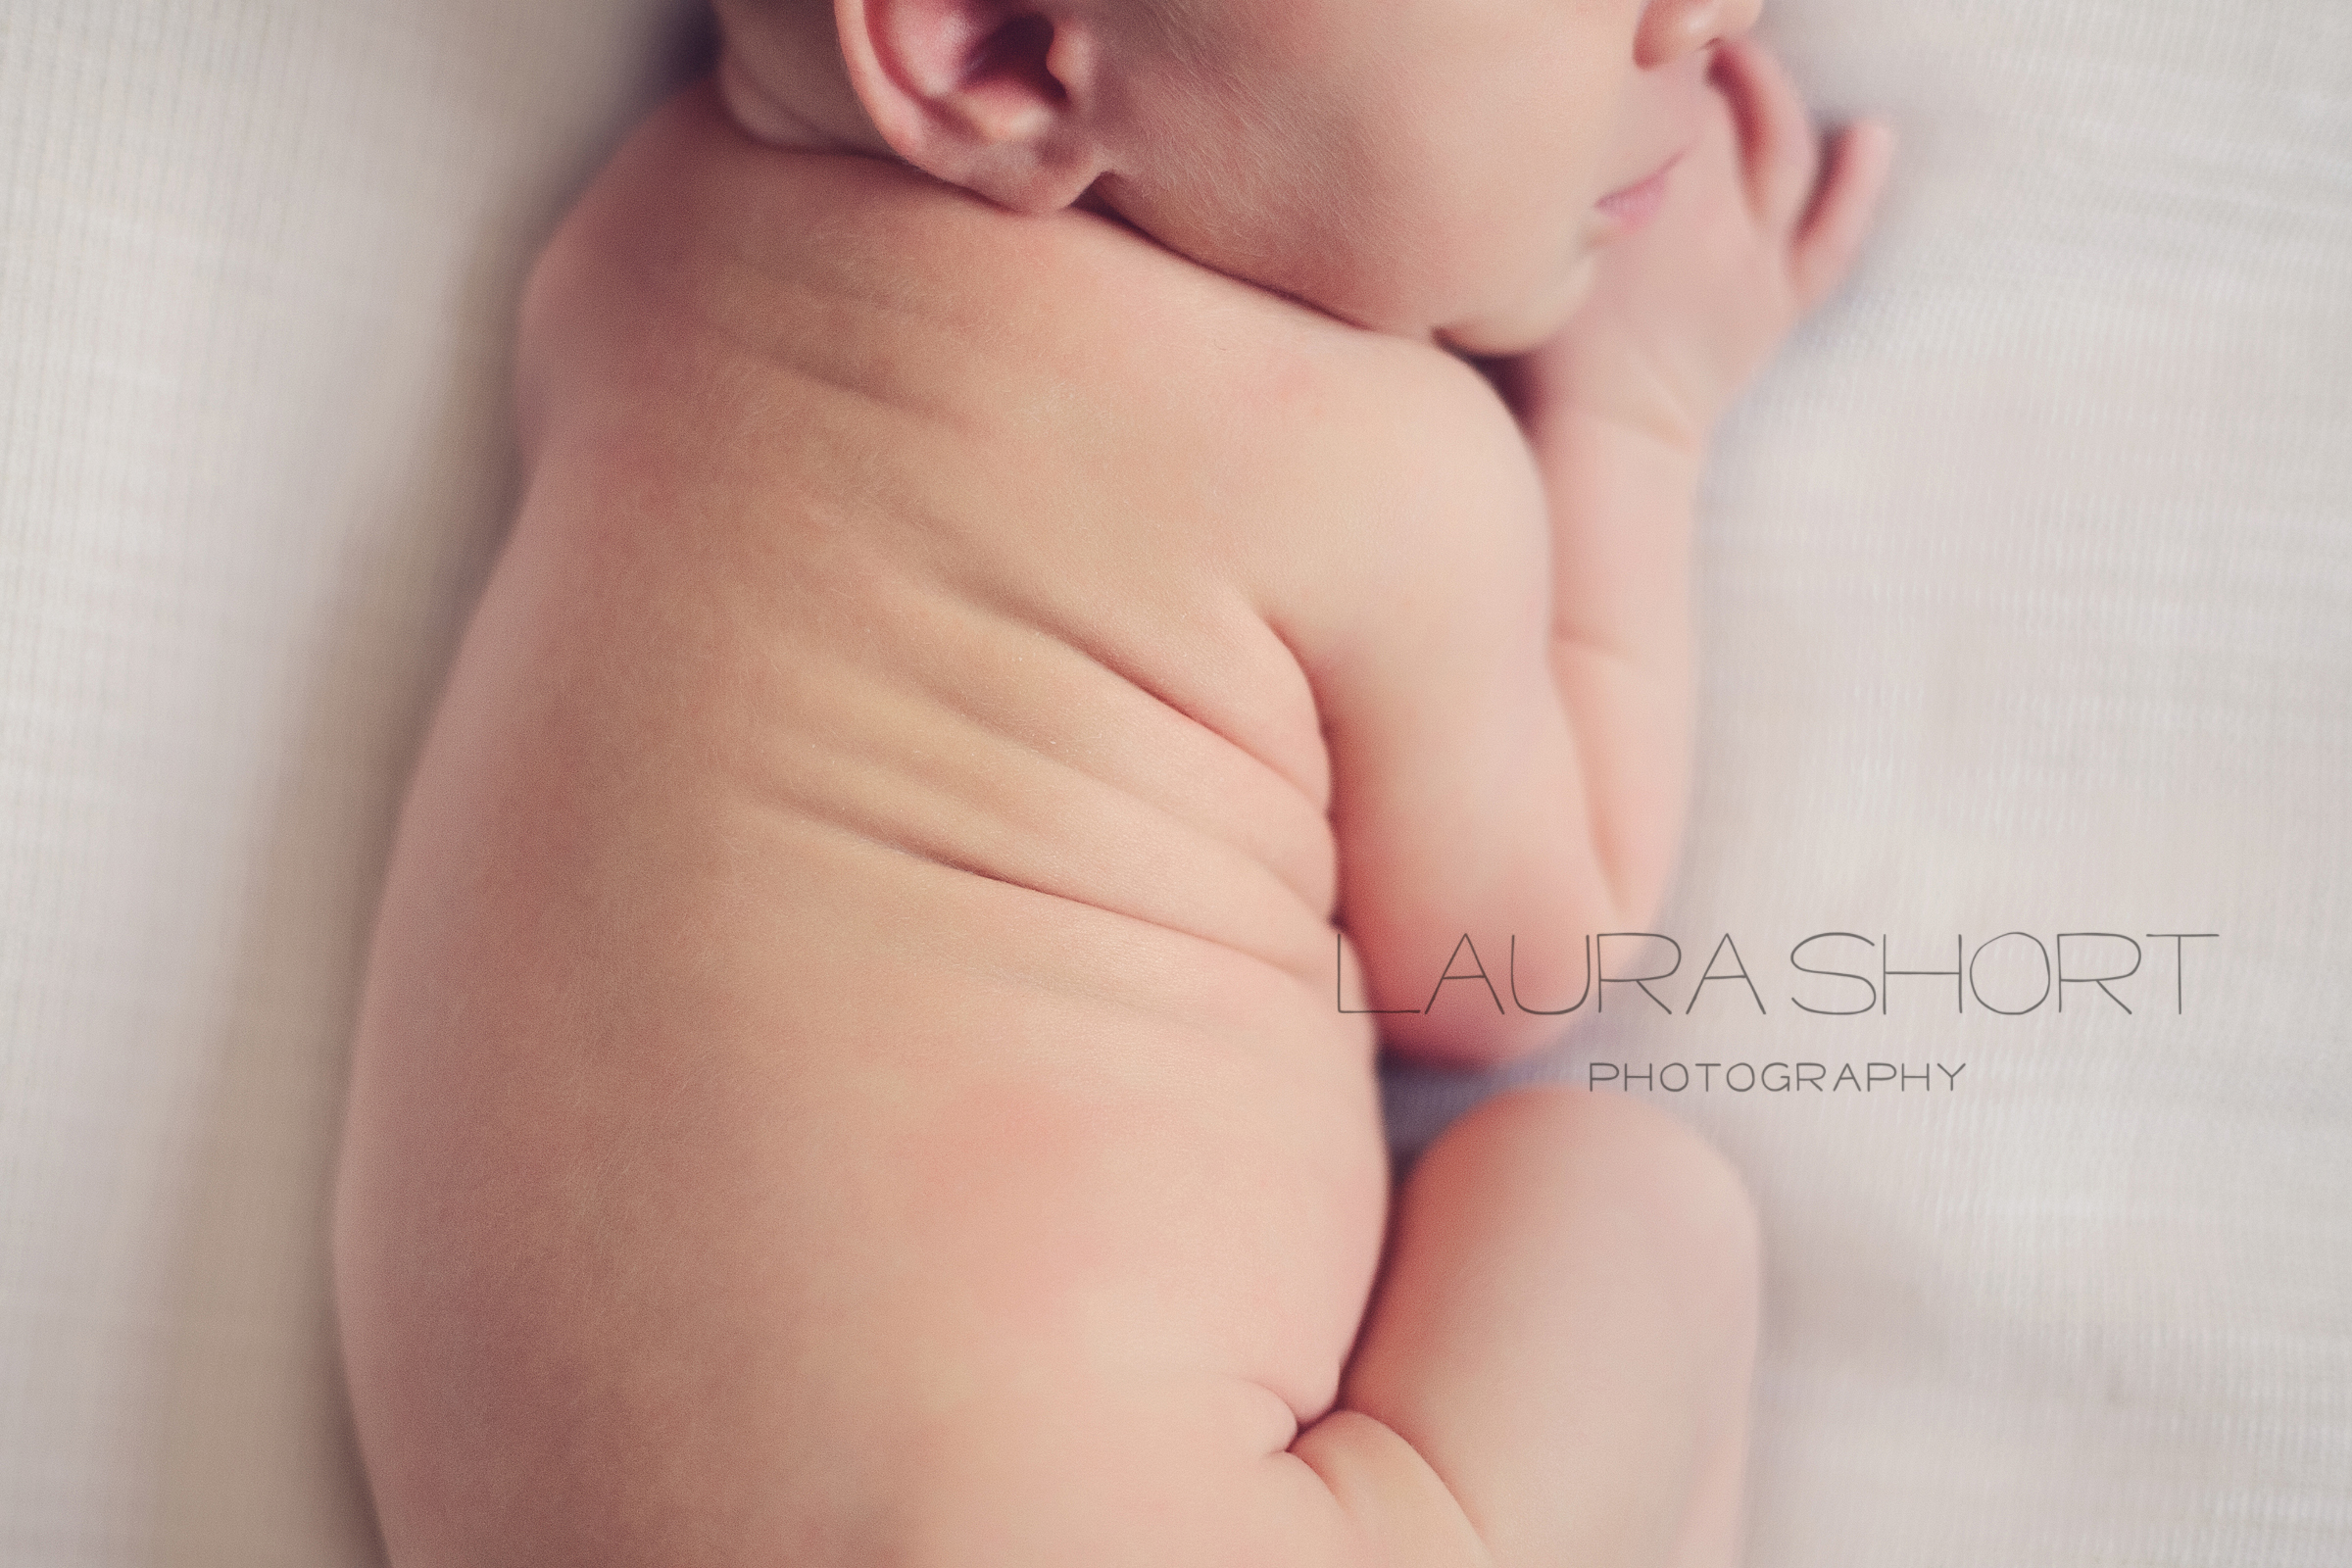 Baltimore-Newborn-Photographer-Laura-Short